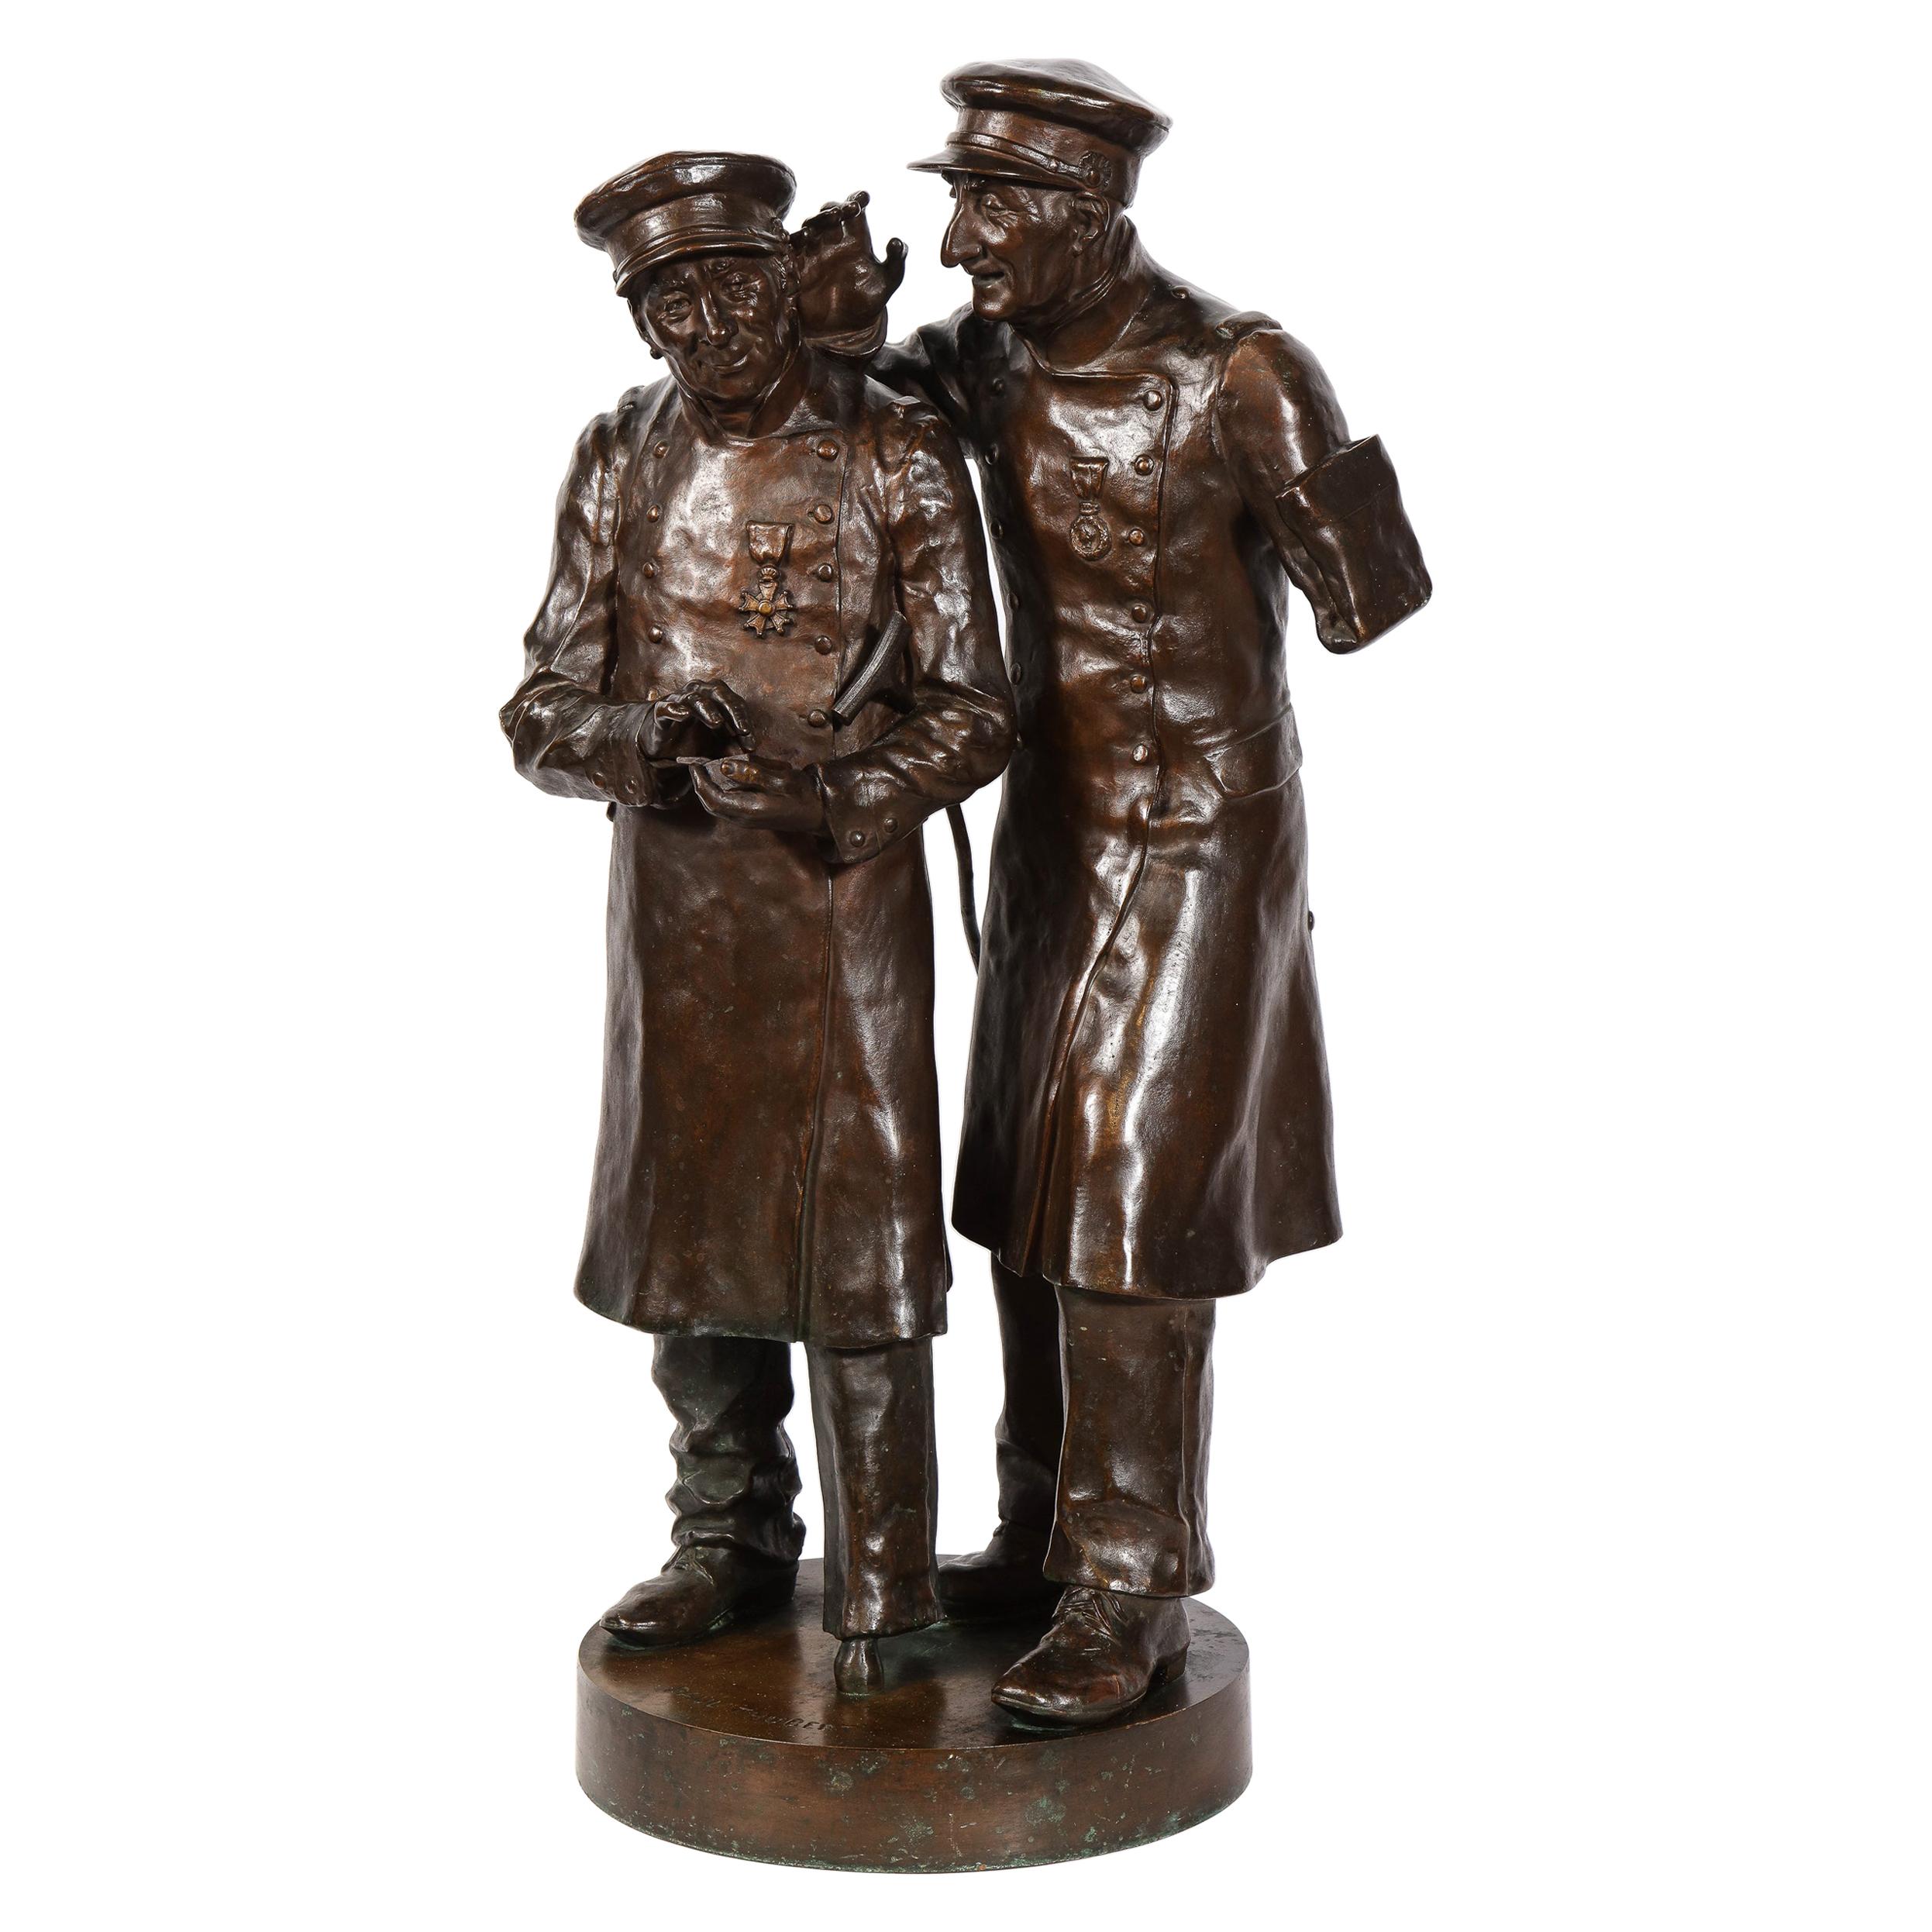 Paul Thubert 'English, 19th Century' a Large Bronze Sculpture of War Veterans